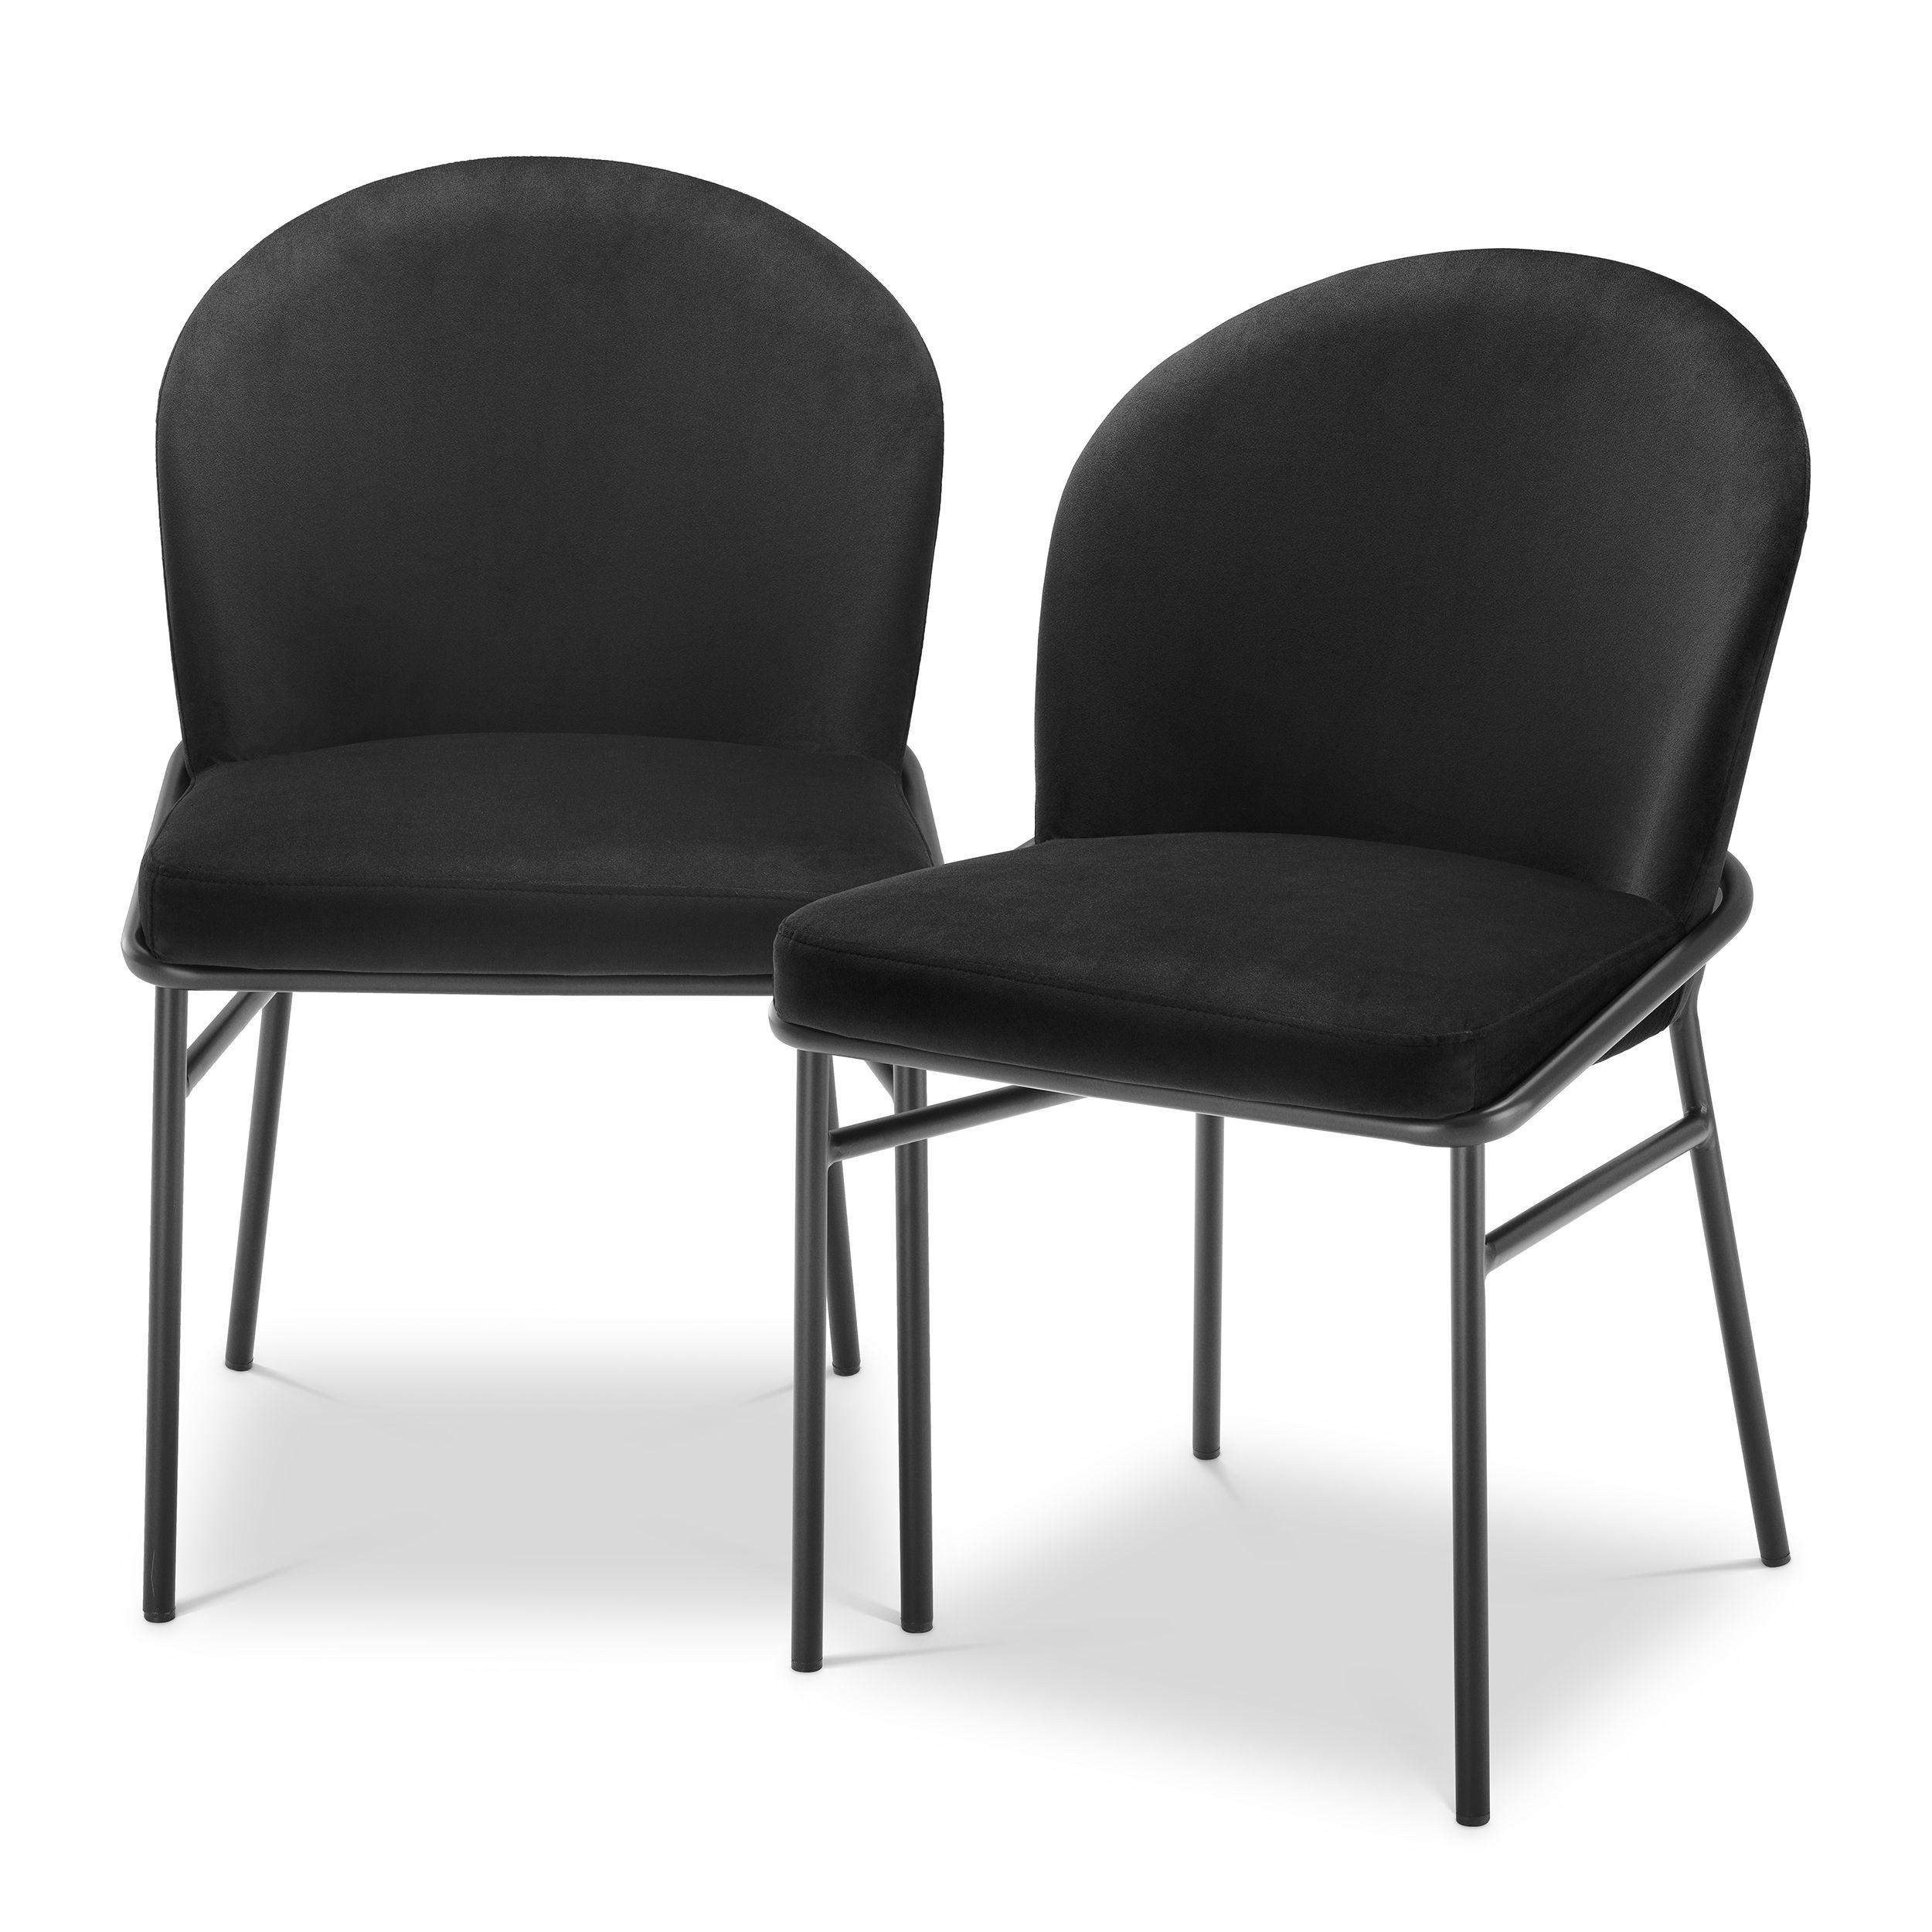 Купить Стул без подлокотника Dining Chair Willis set of 2 в интернет-магазине roooms.ru